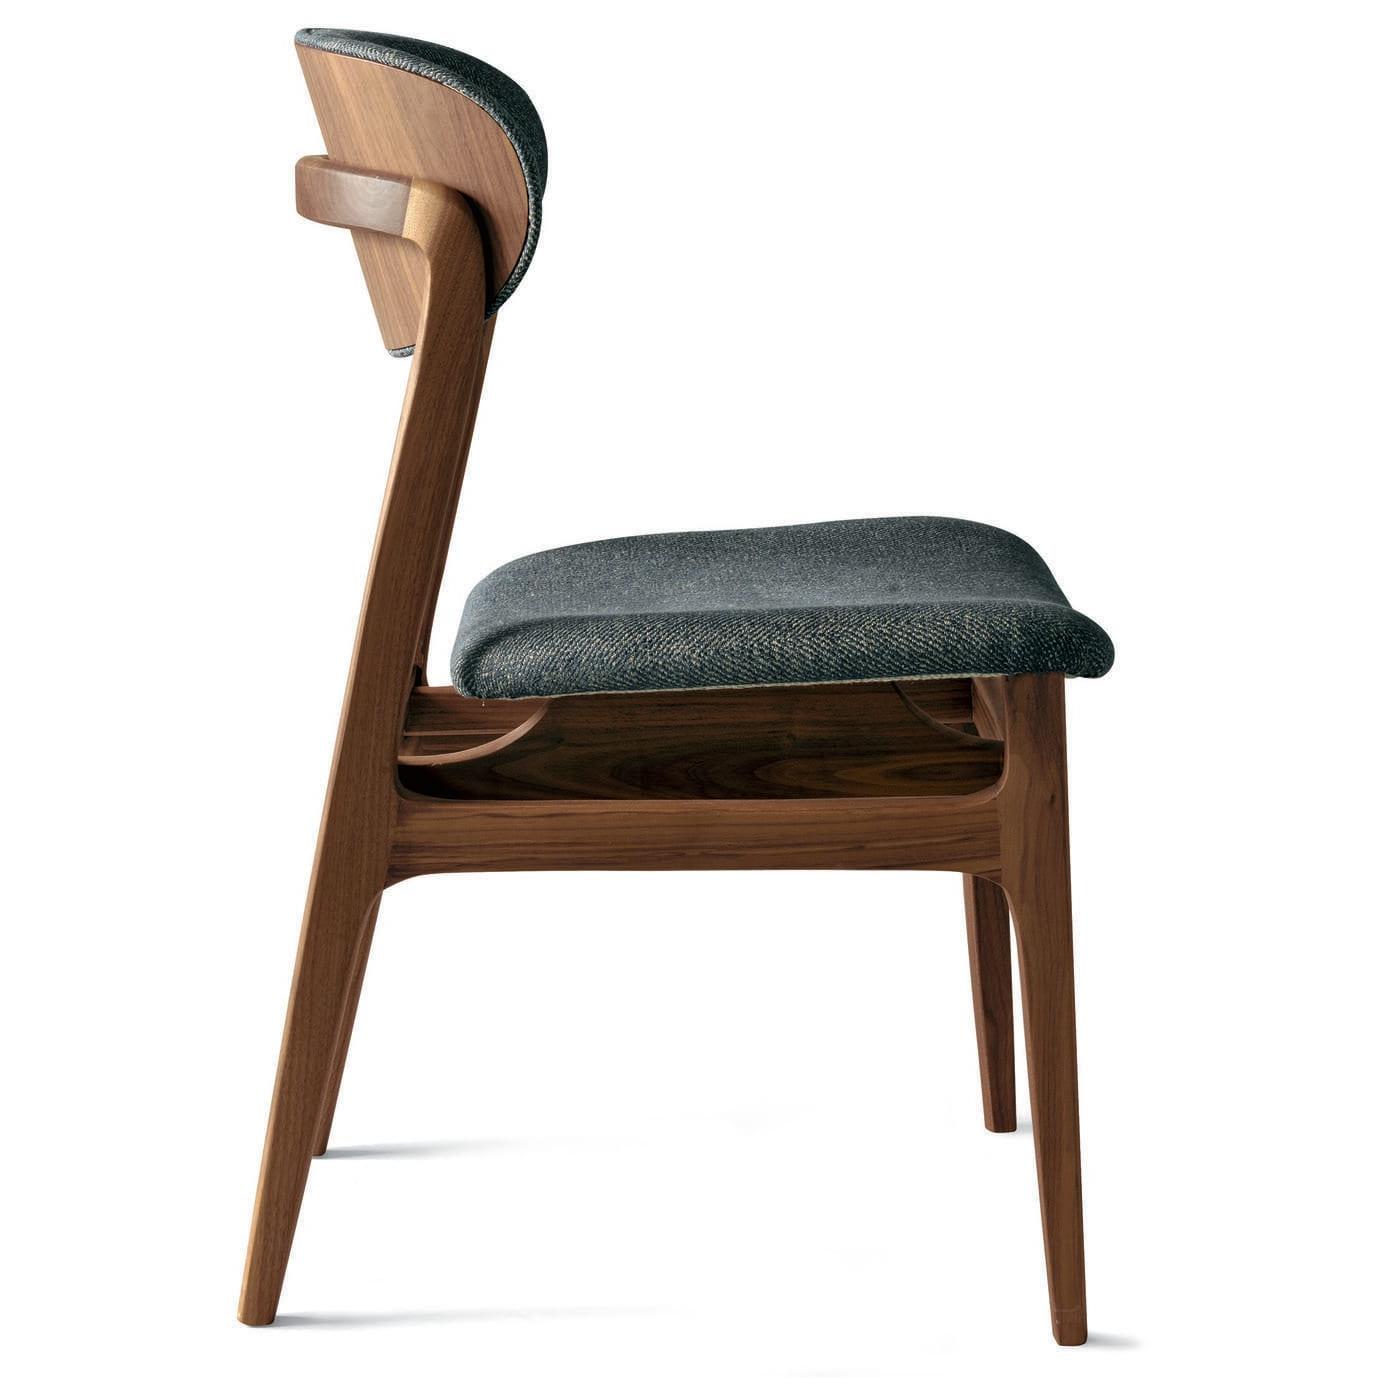 Agio Exquisite Italian Chair